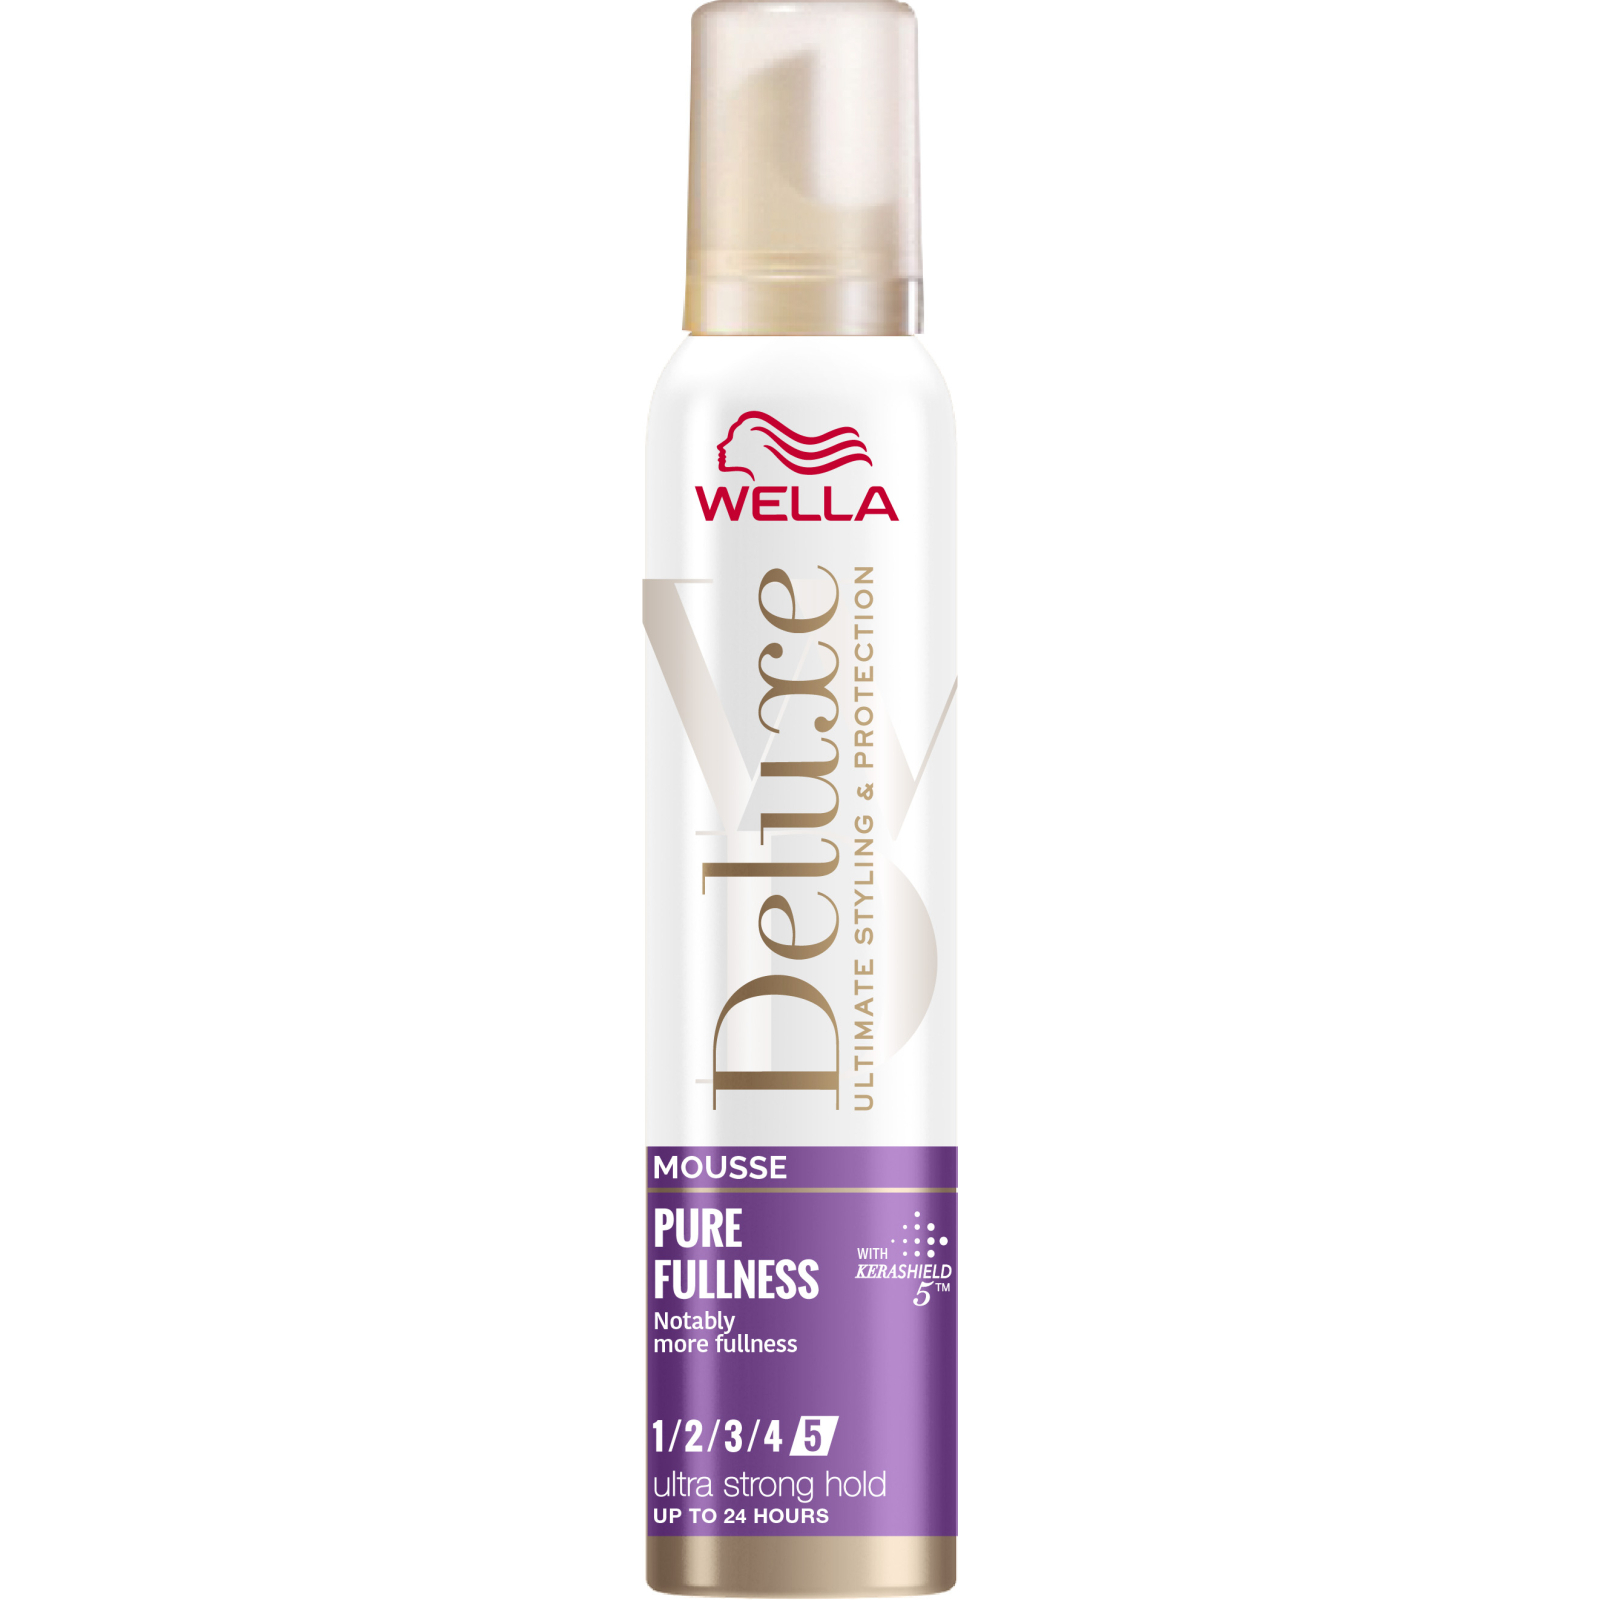 Мусс для волос Wella Deluxe Выразительный объем для тонких волос 200 мл (3614228296090)